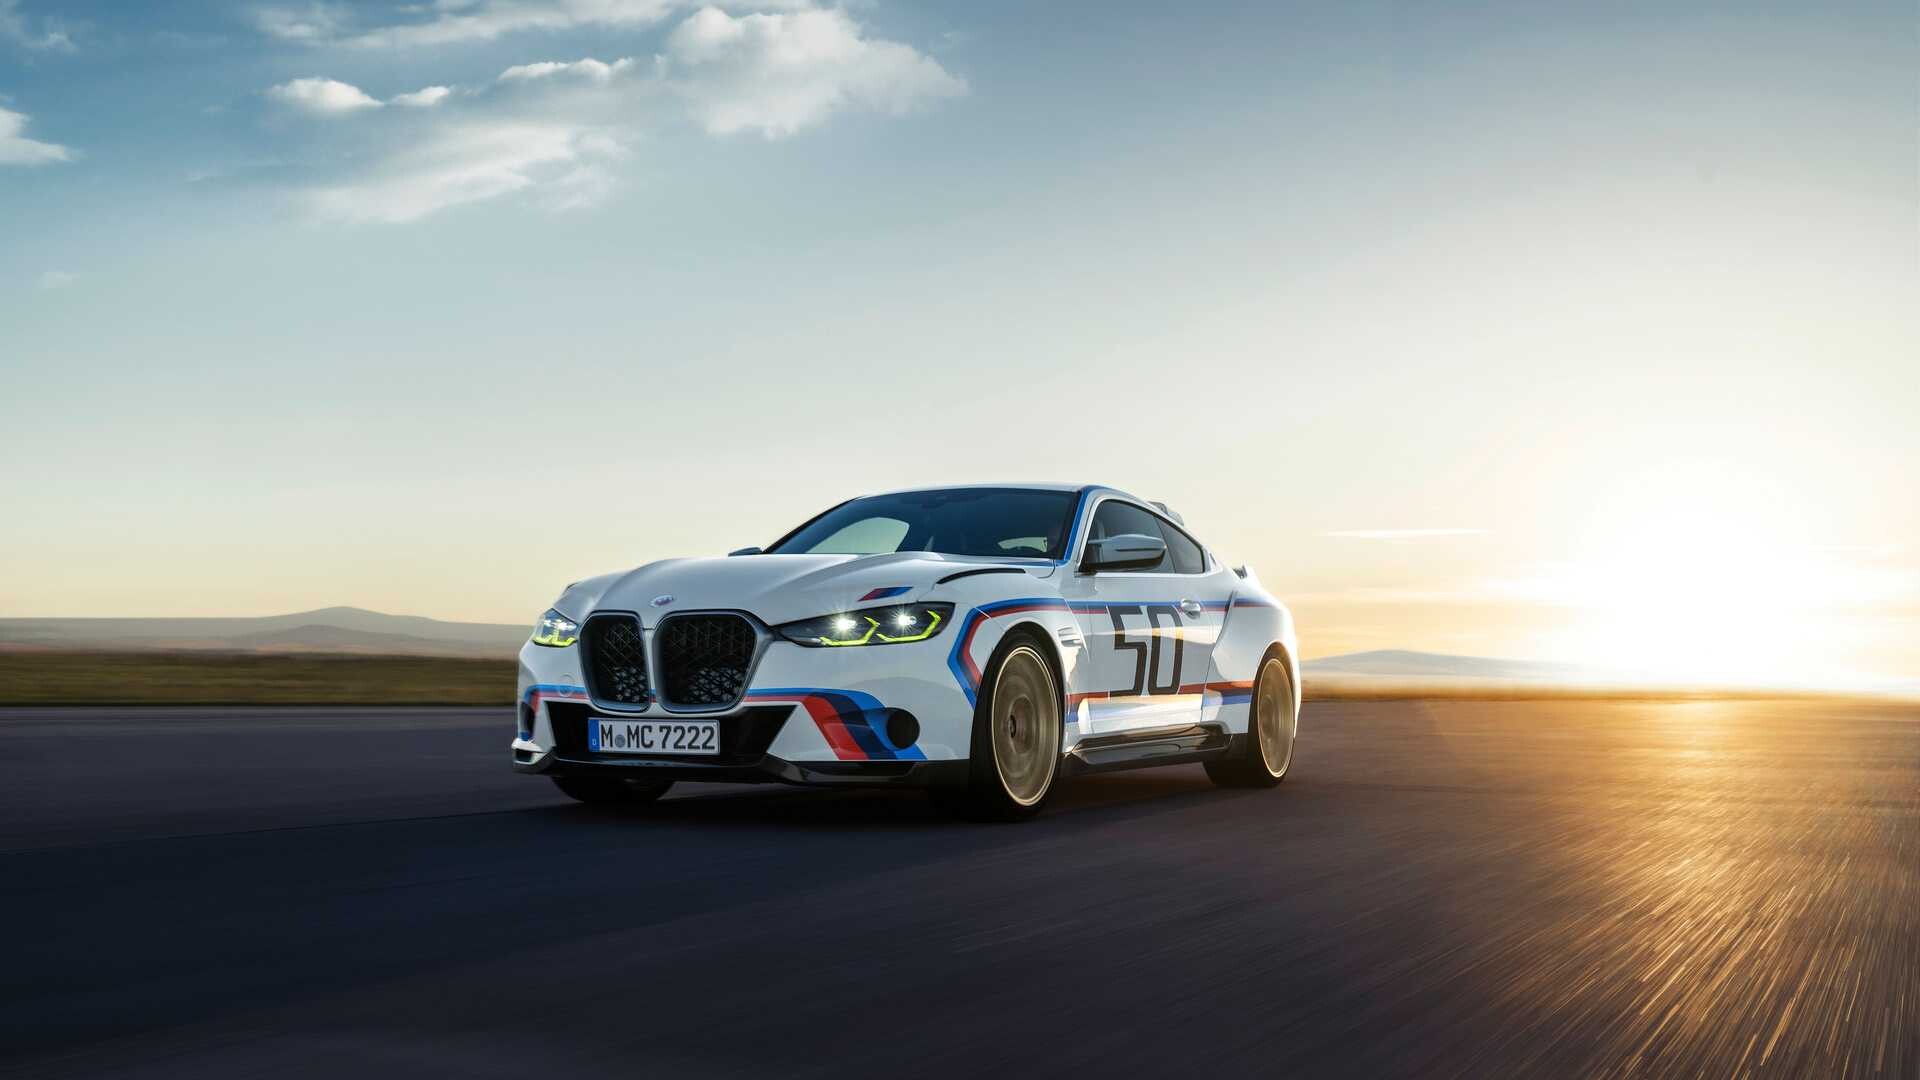 Automobile. BMW 3.0 CSL, le modèle le plus exclusif jamais construit